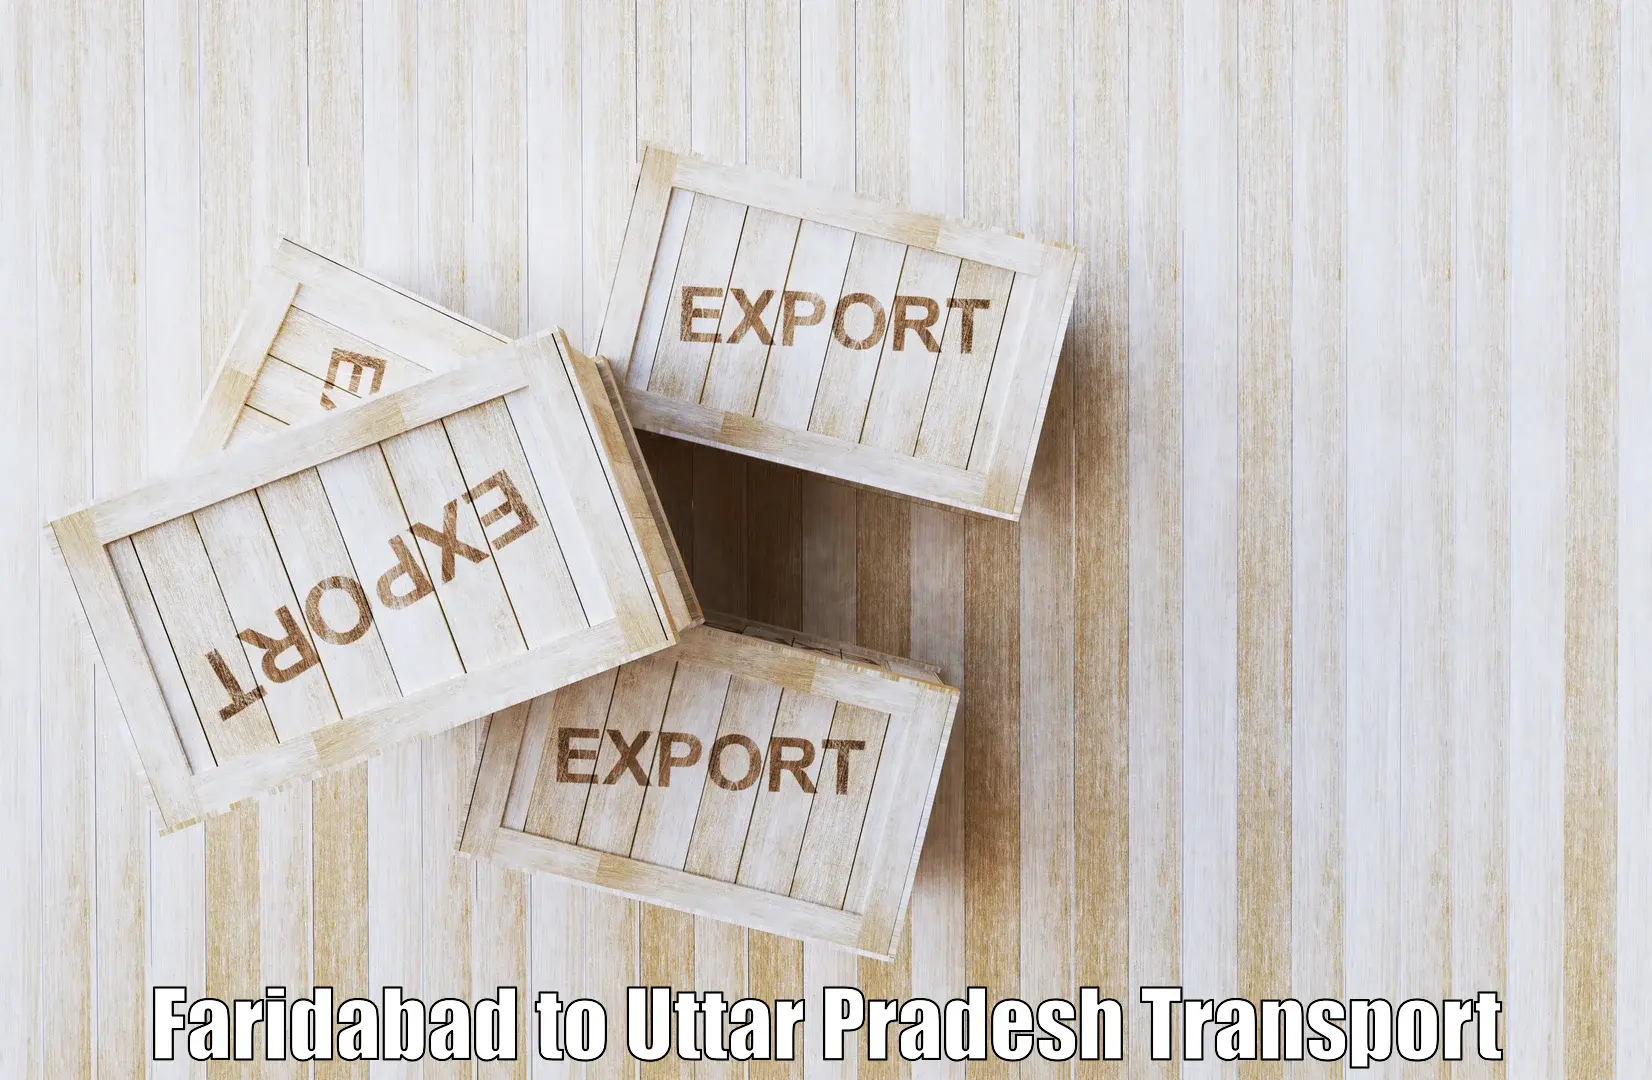 Nearest transport service Faridabad to Uttar Pradesh